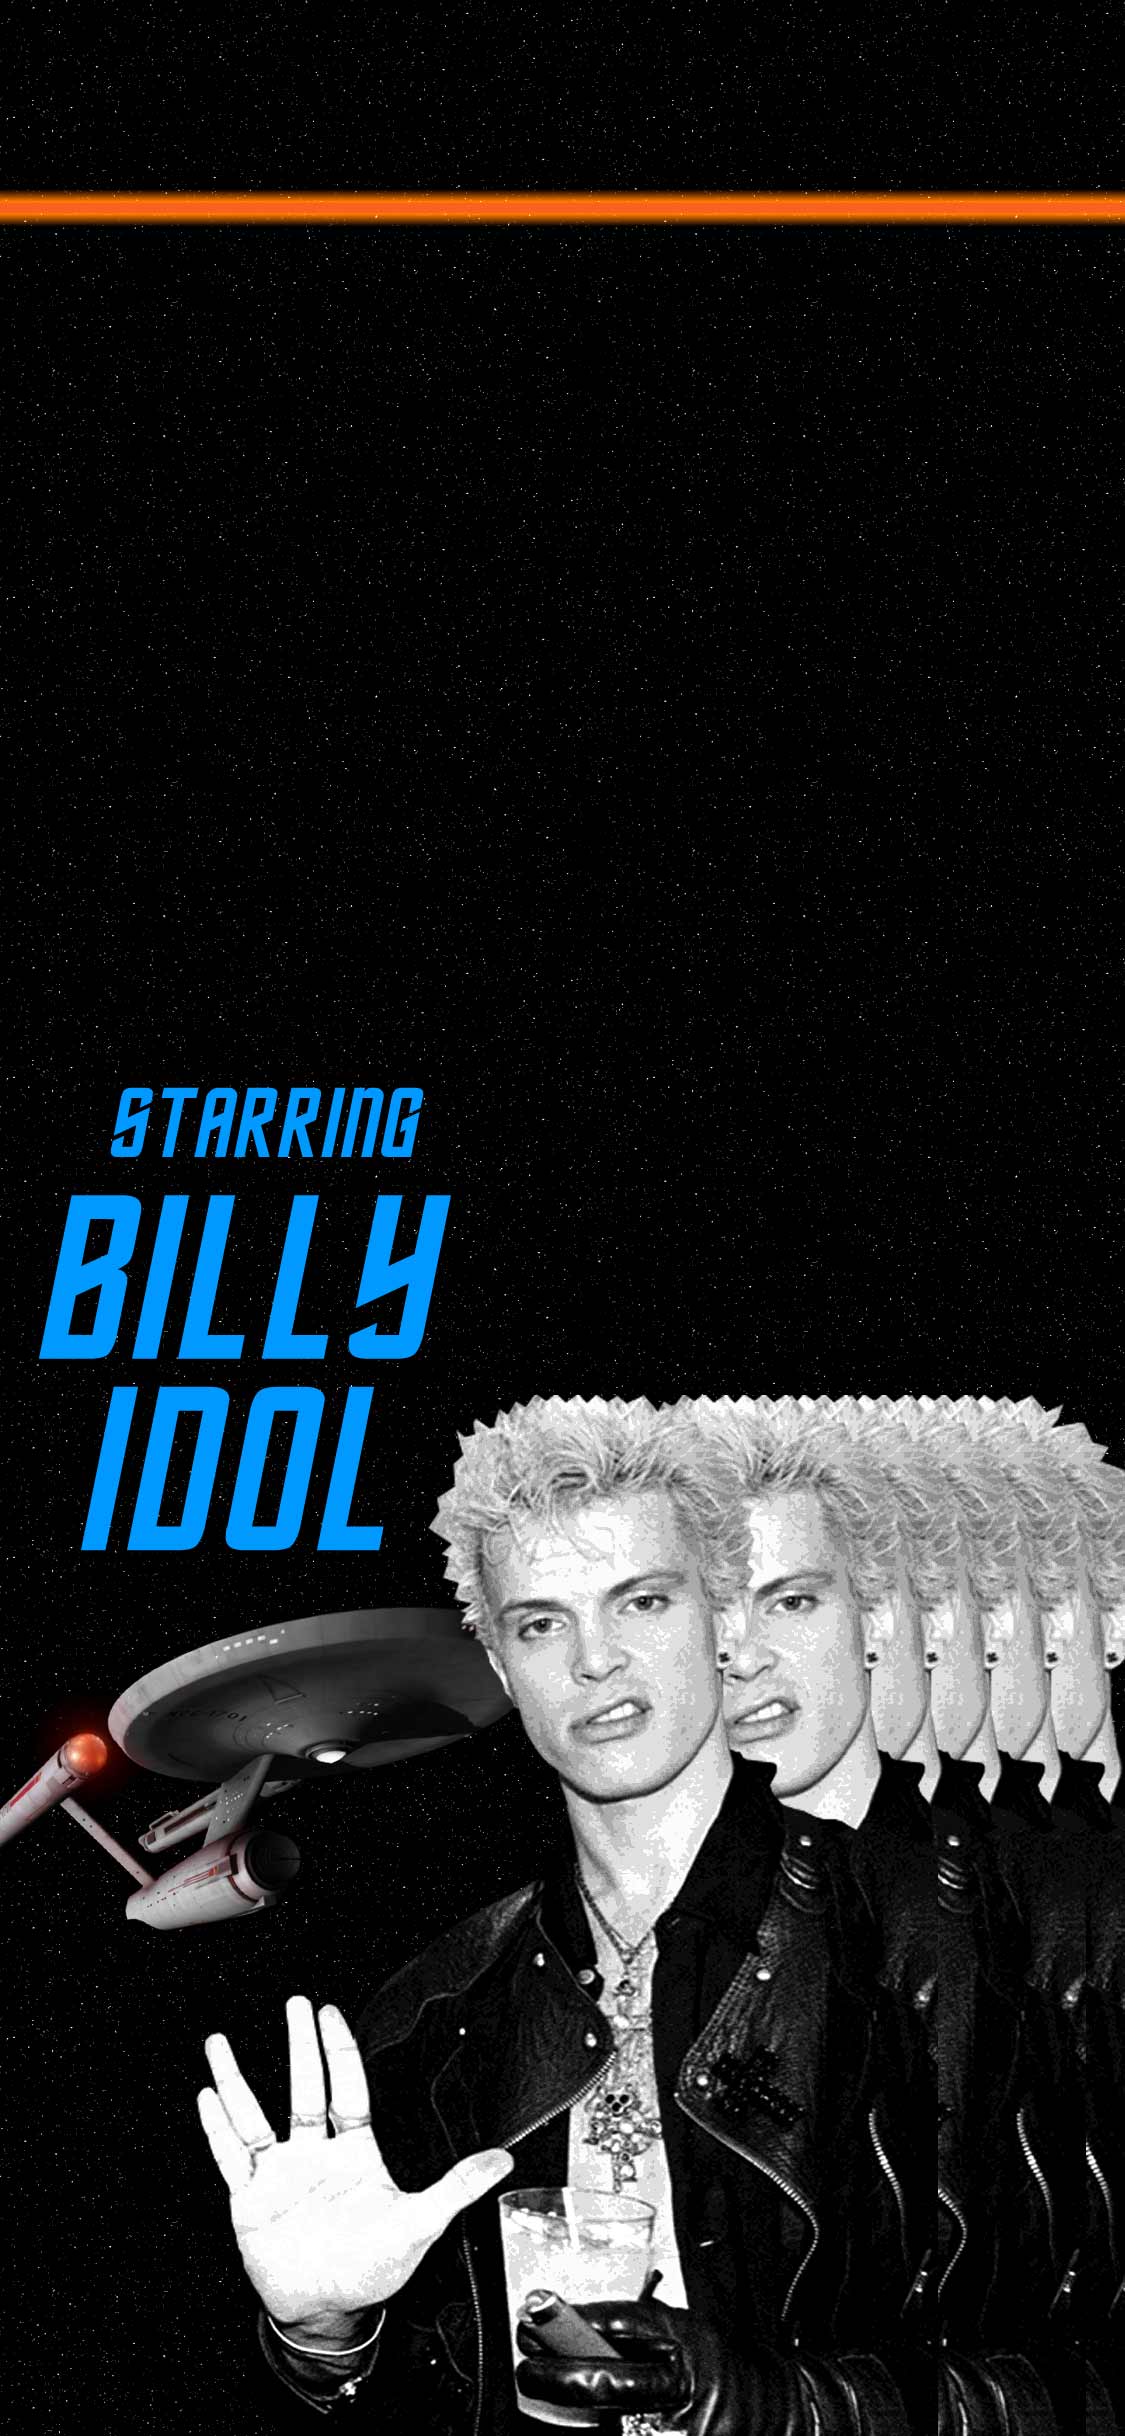 phone wallpaper displaying billy idol // star trek